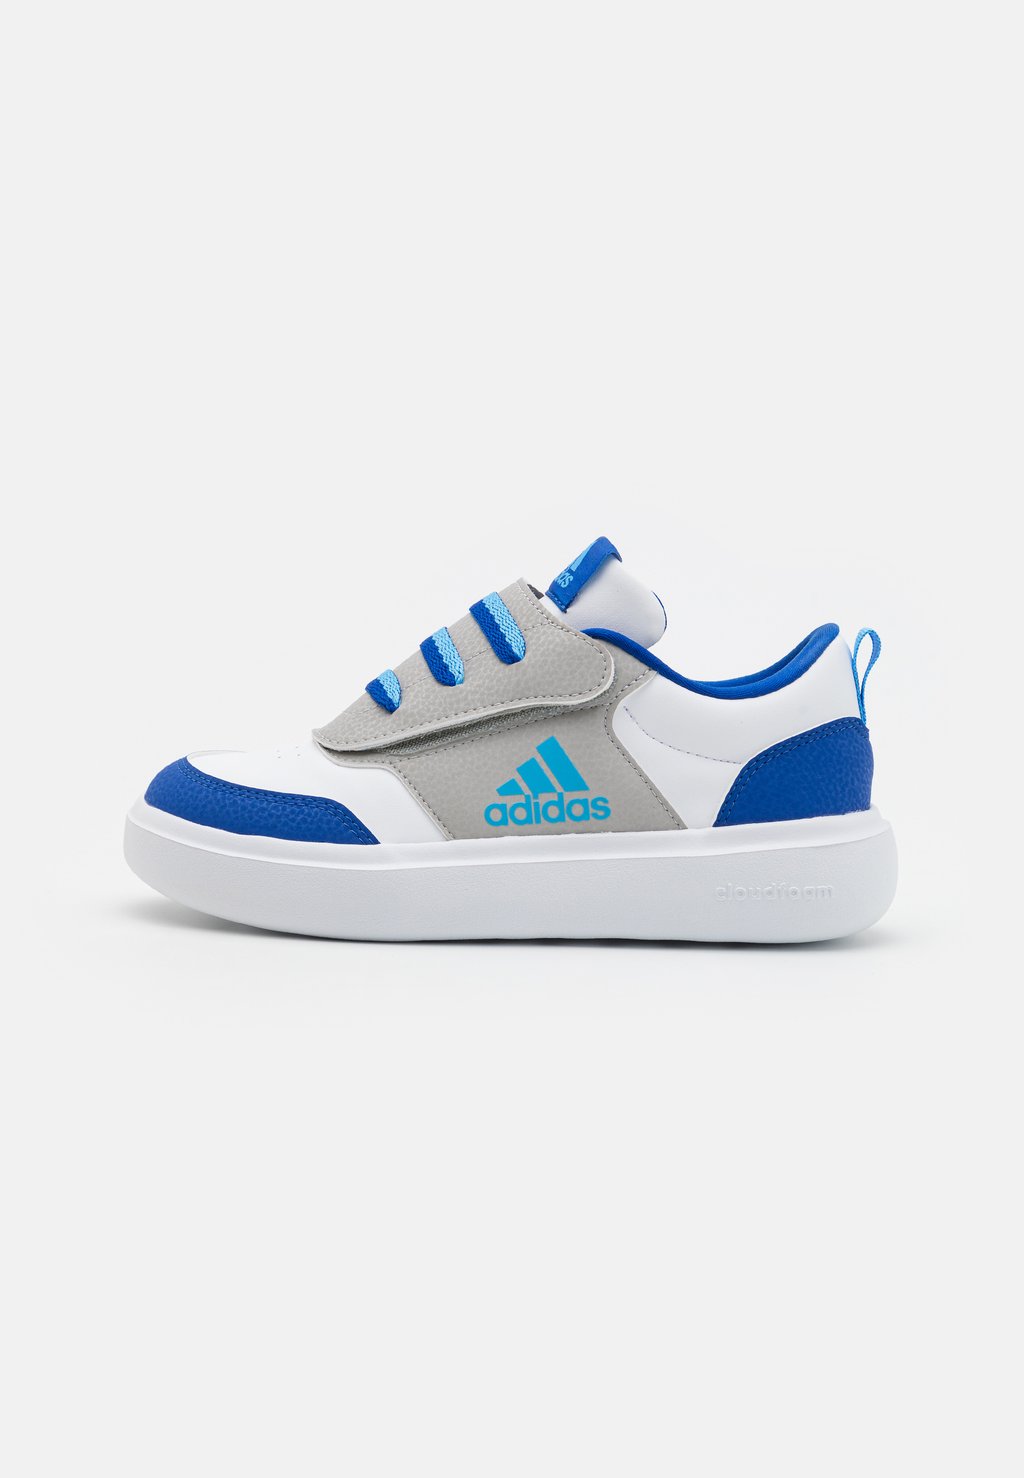 Кроссовки Park Unisex Adidas, цвет footwear white/blue burst/team royal blue